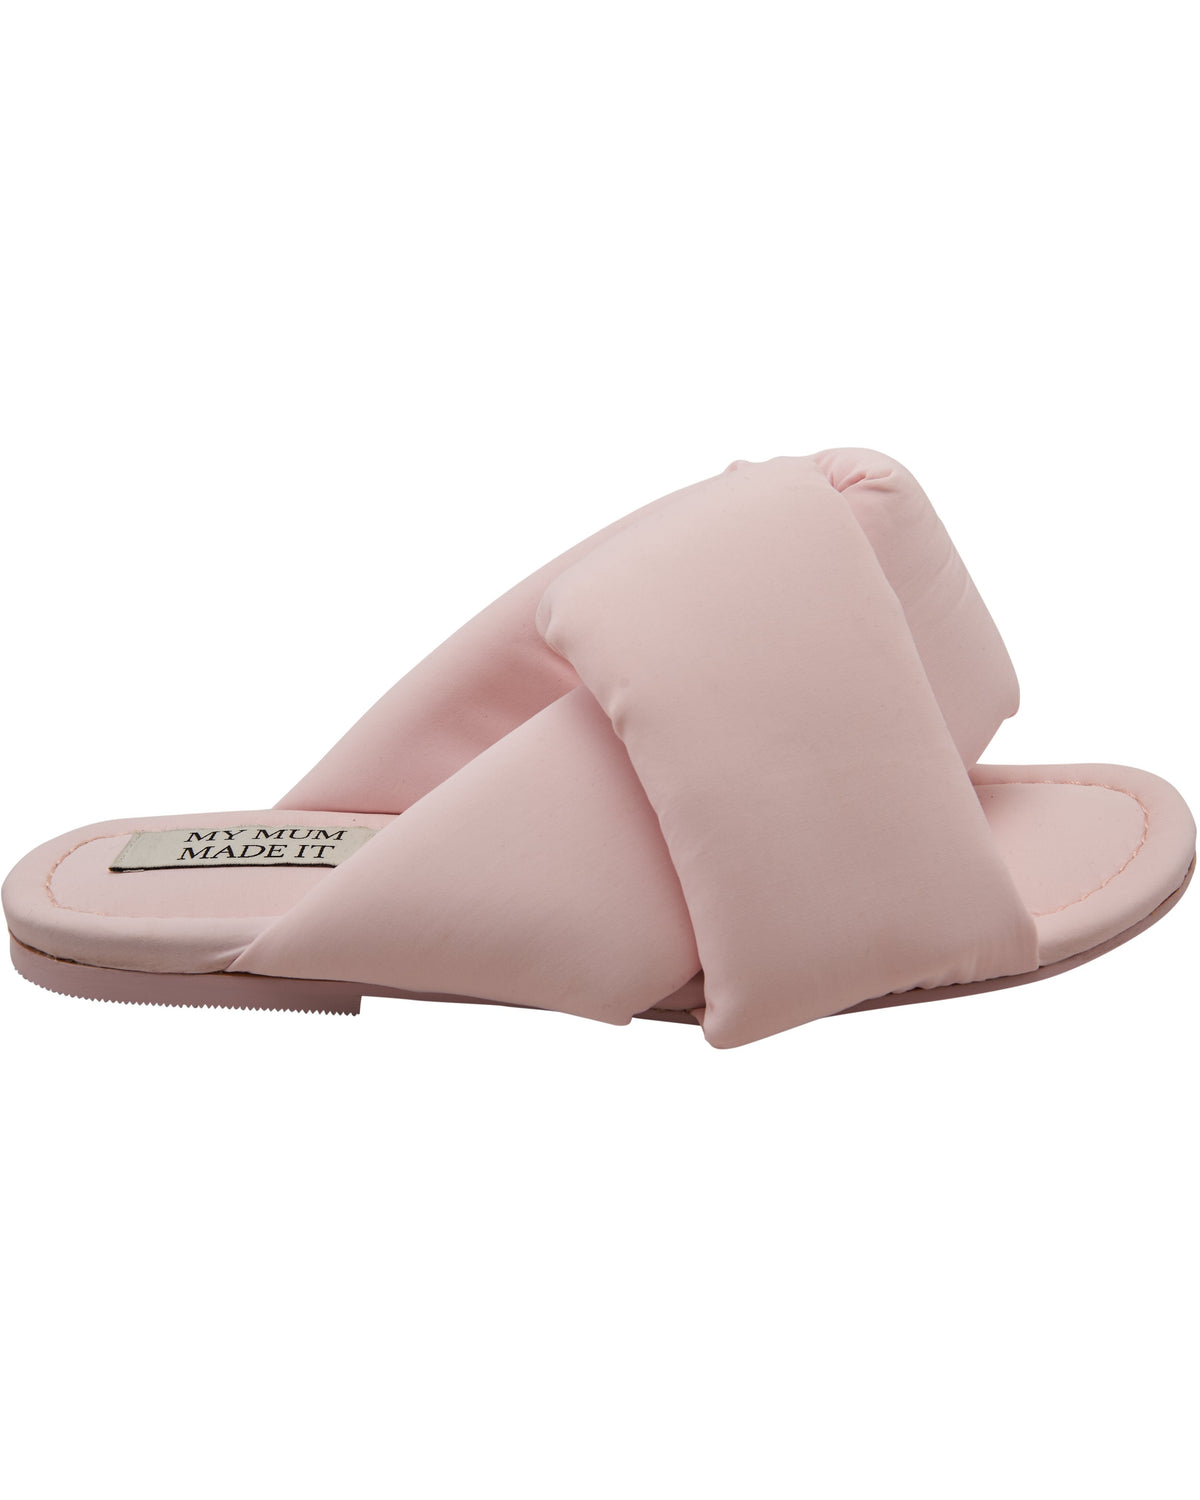 Puffer Slides - Pink